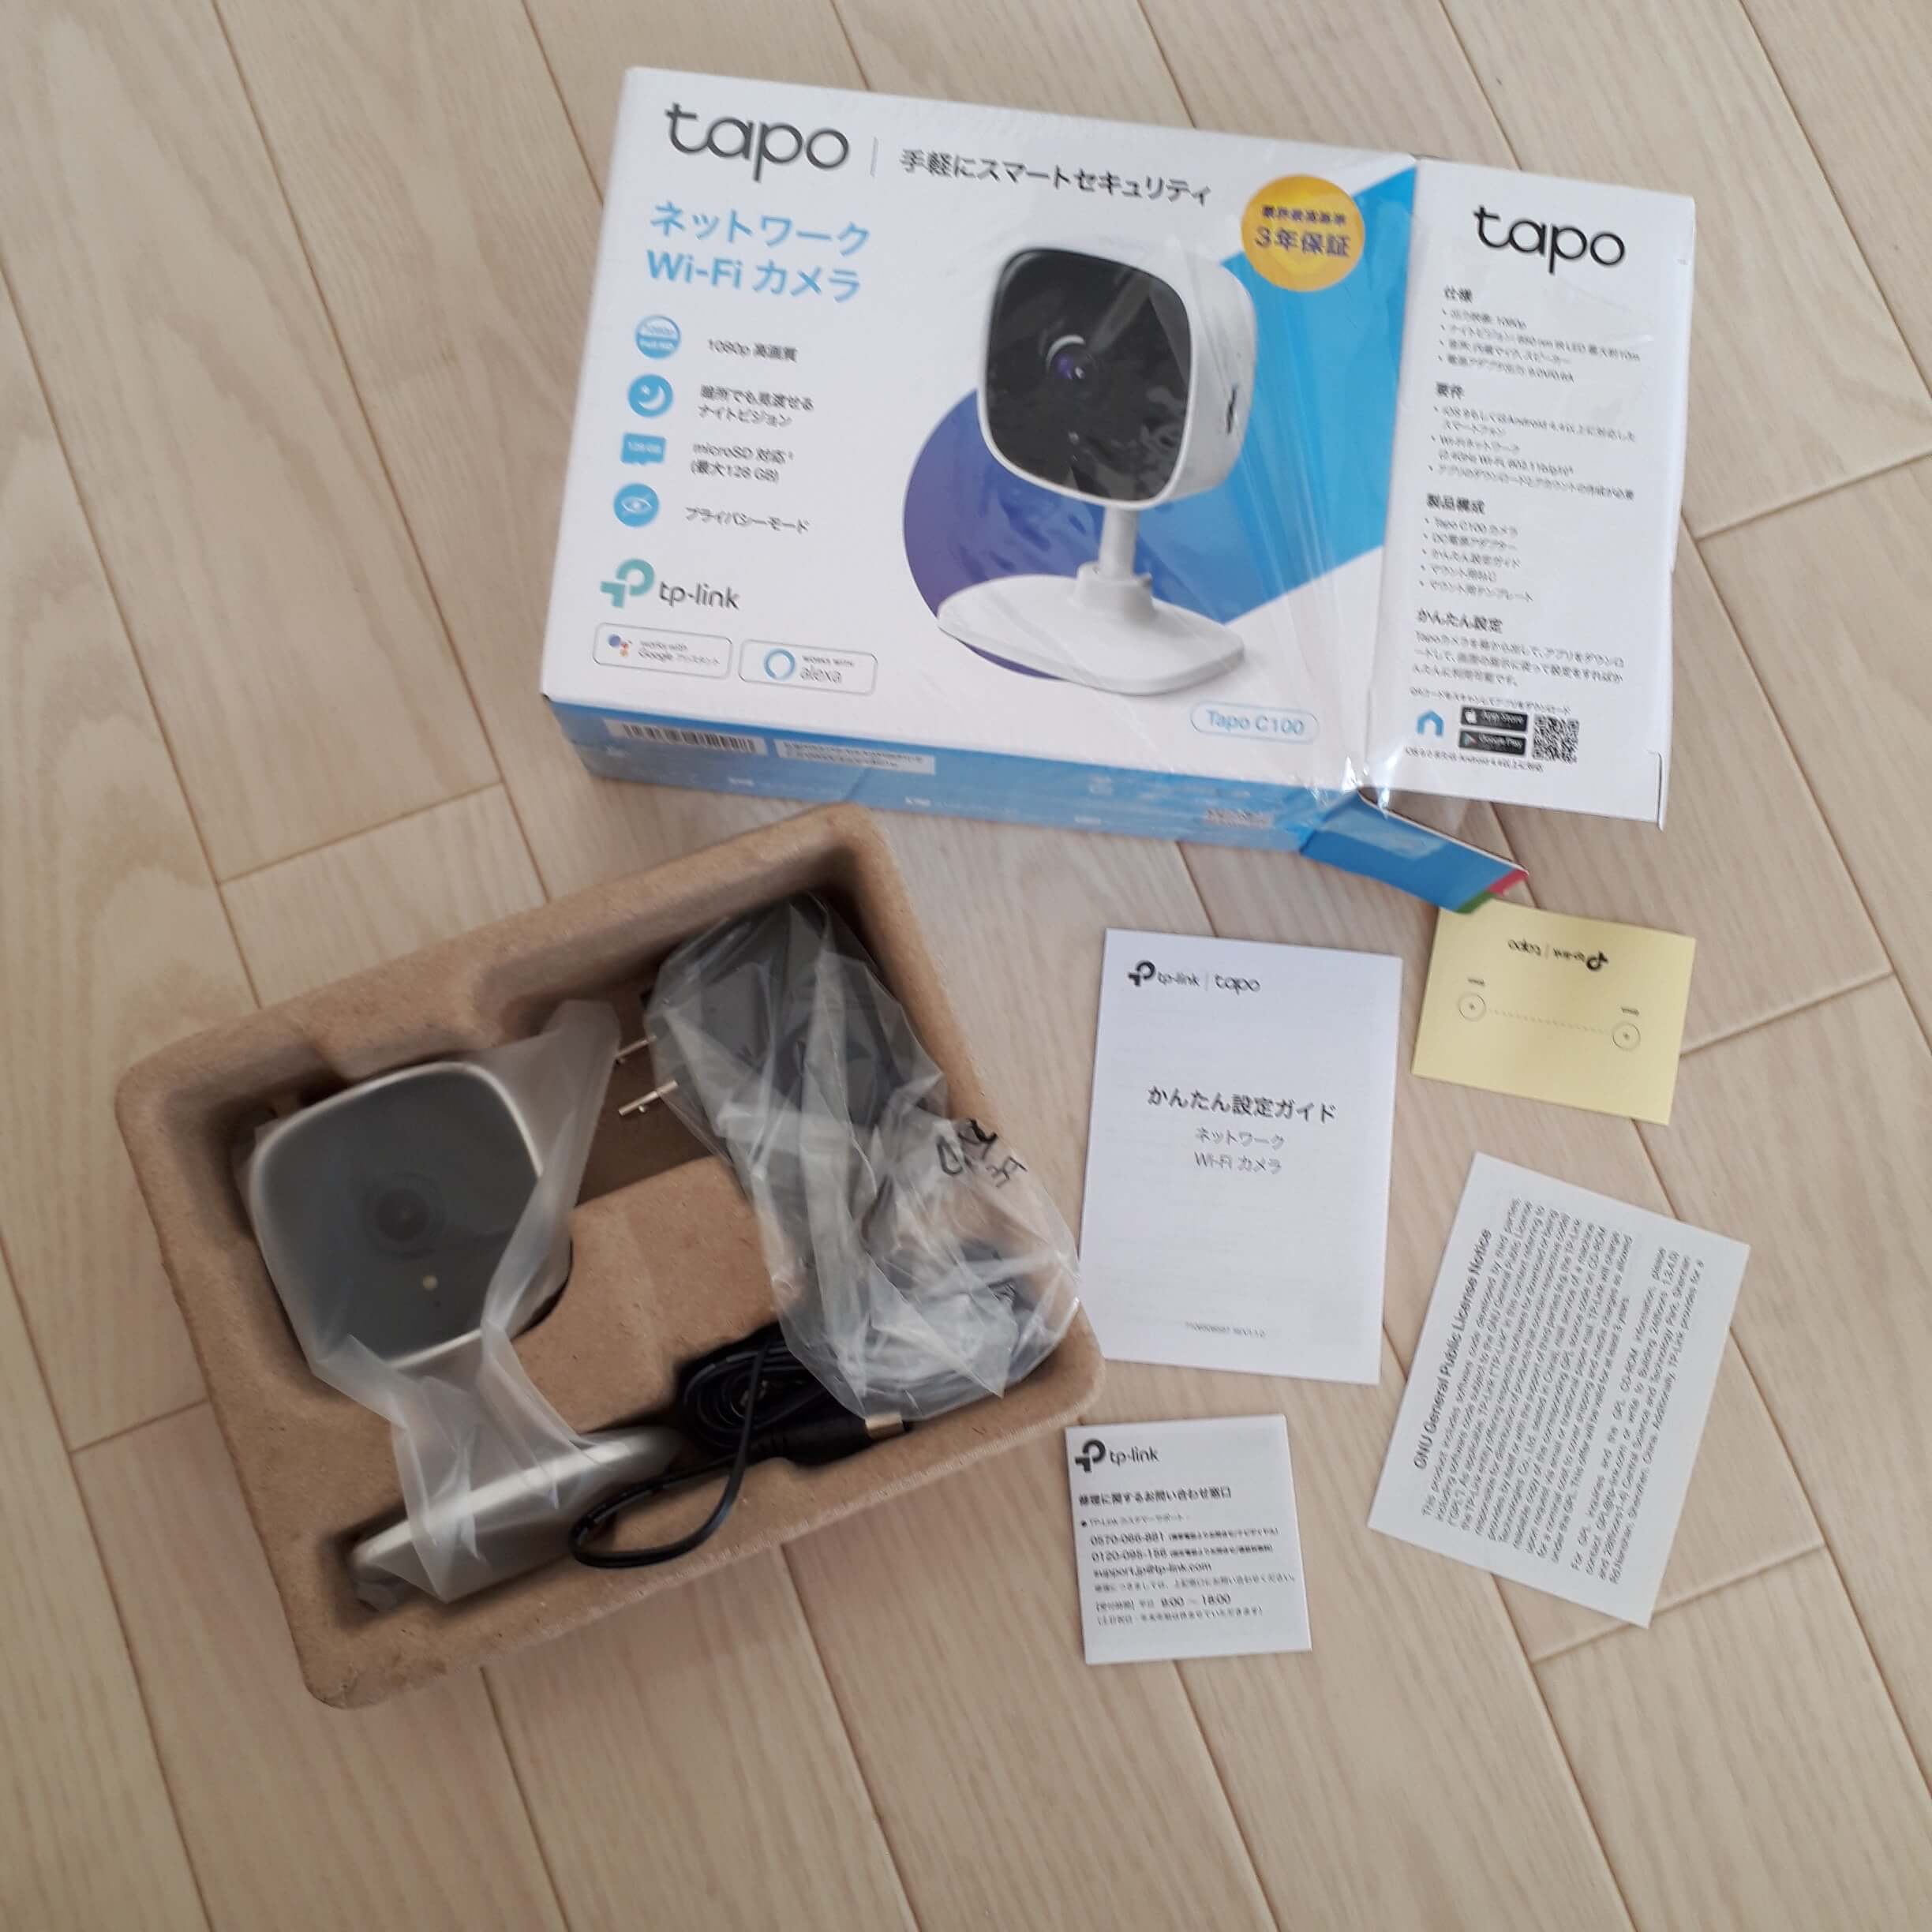 ネットワークWi-Fiカメラ TP-Link Tapo C100 購入 開封の儀